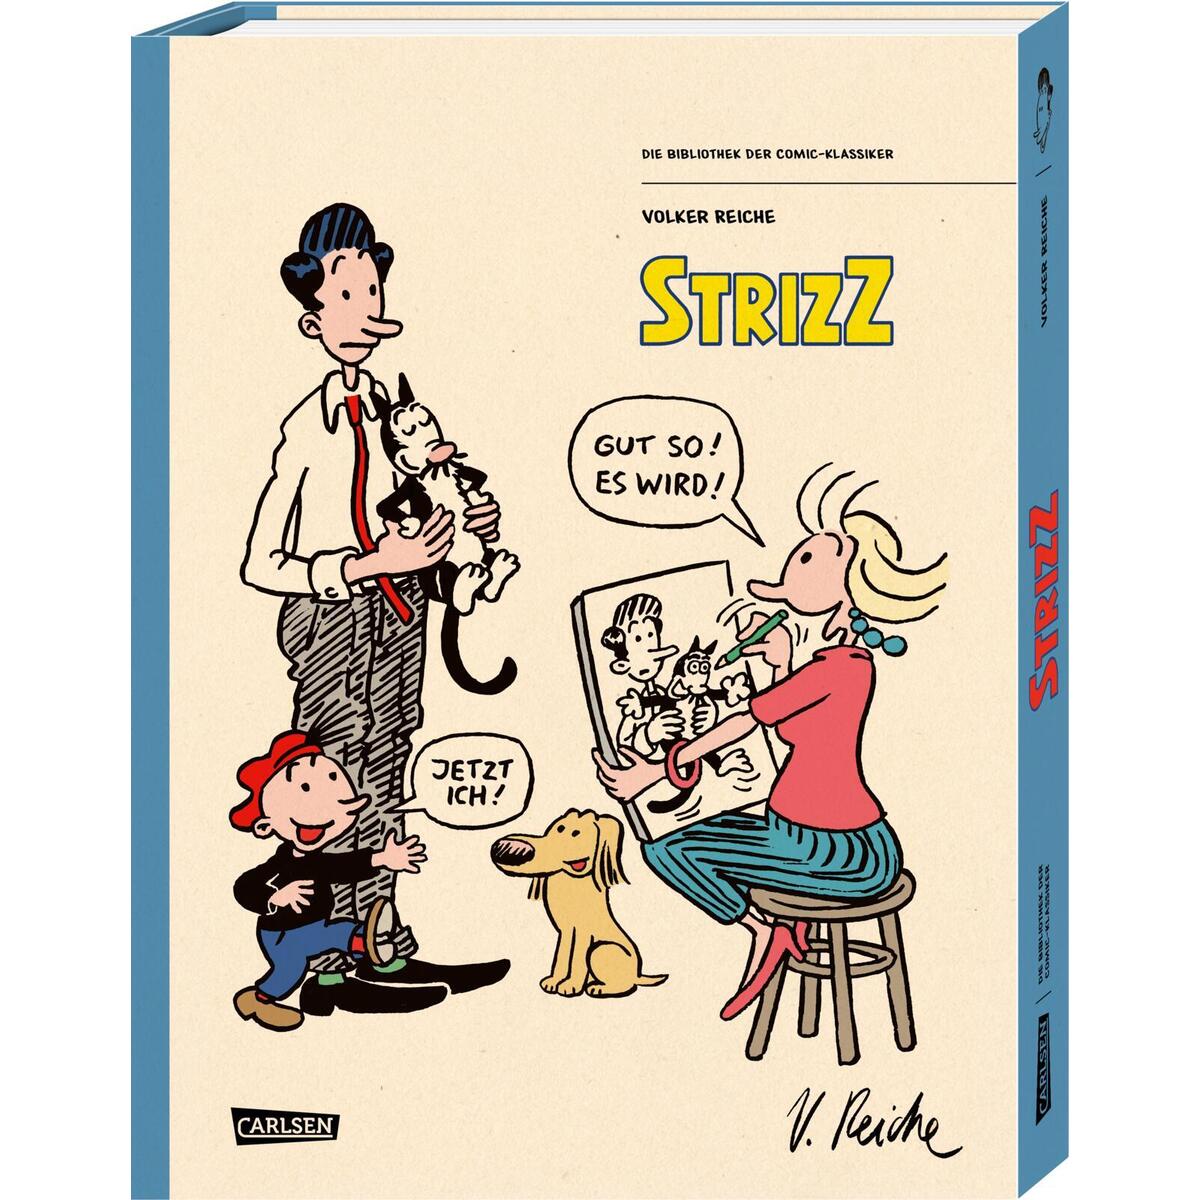 Die Bibliothek der Comic-Klassiker: Strizz von Carlsen Verlag GmbH